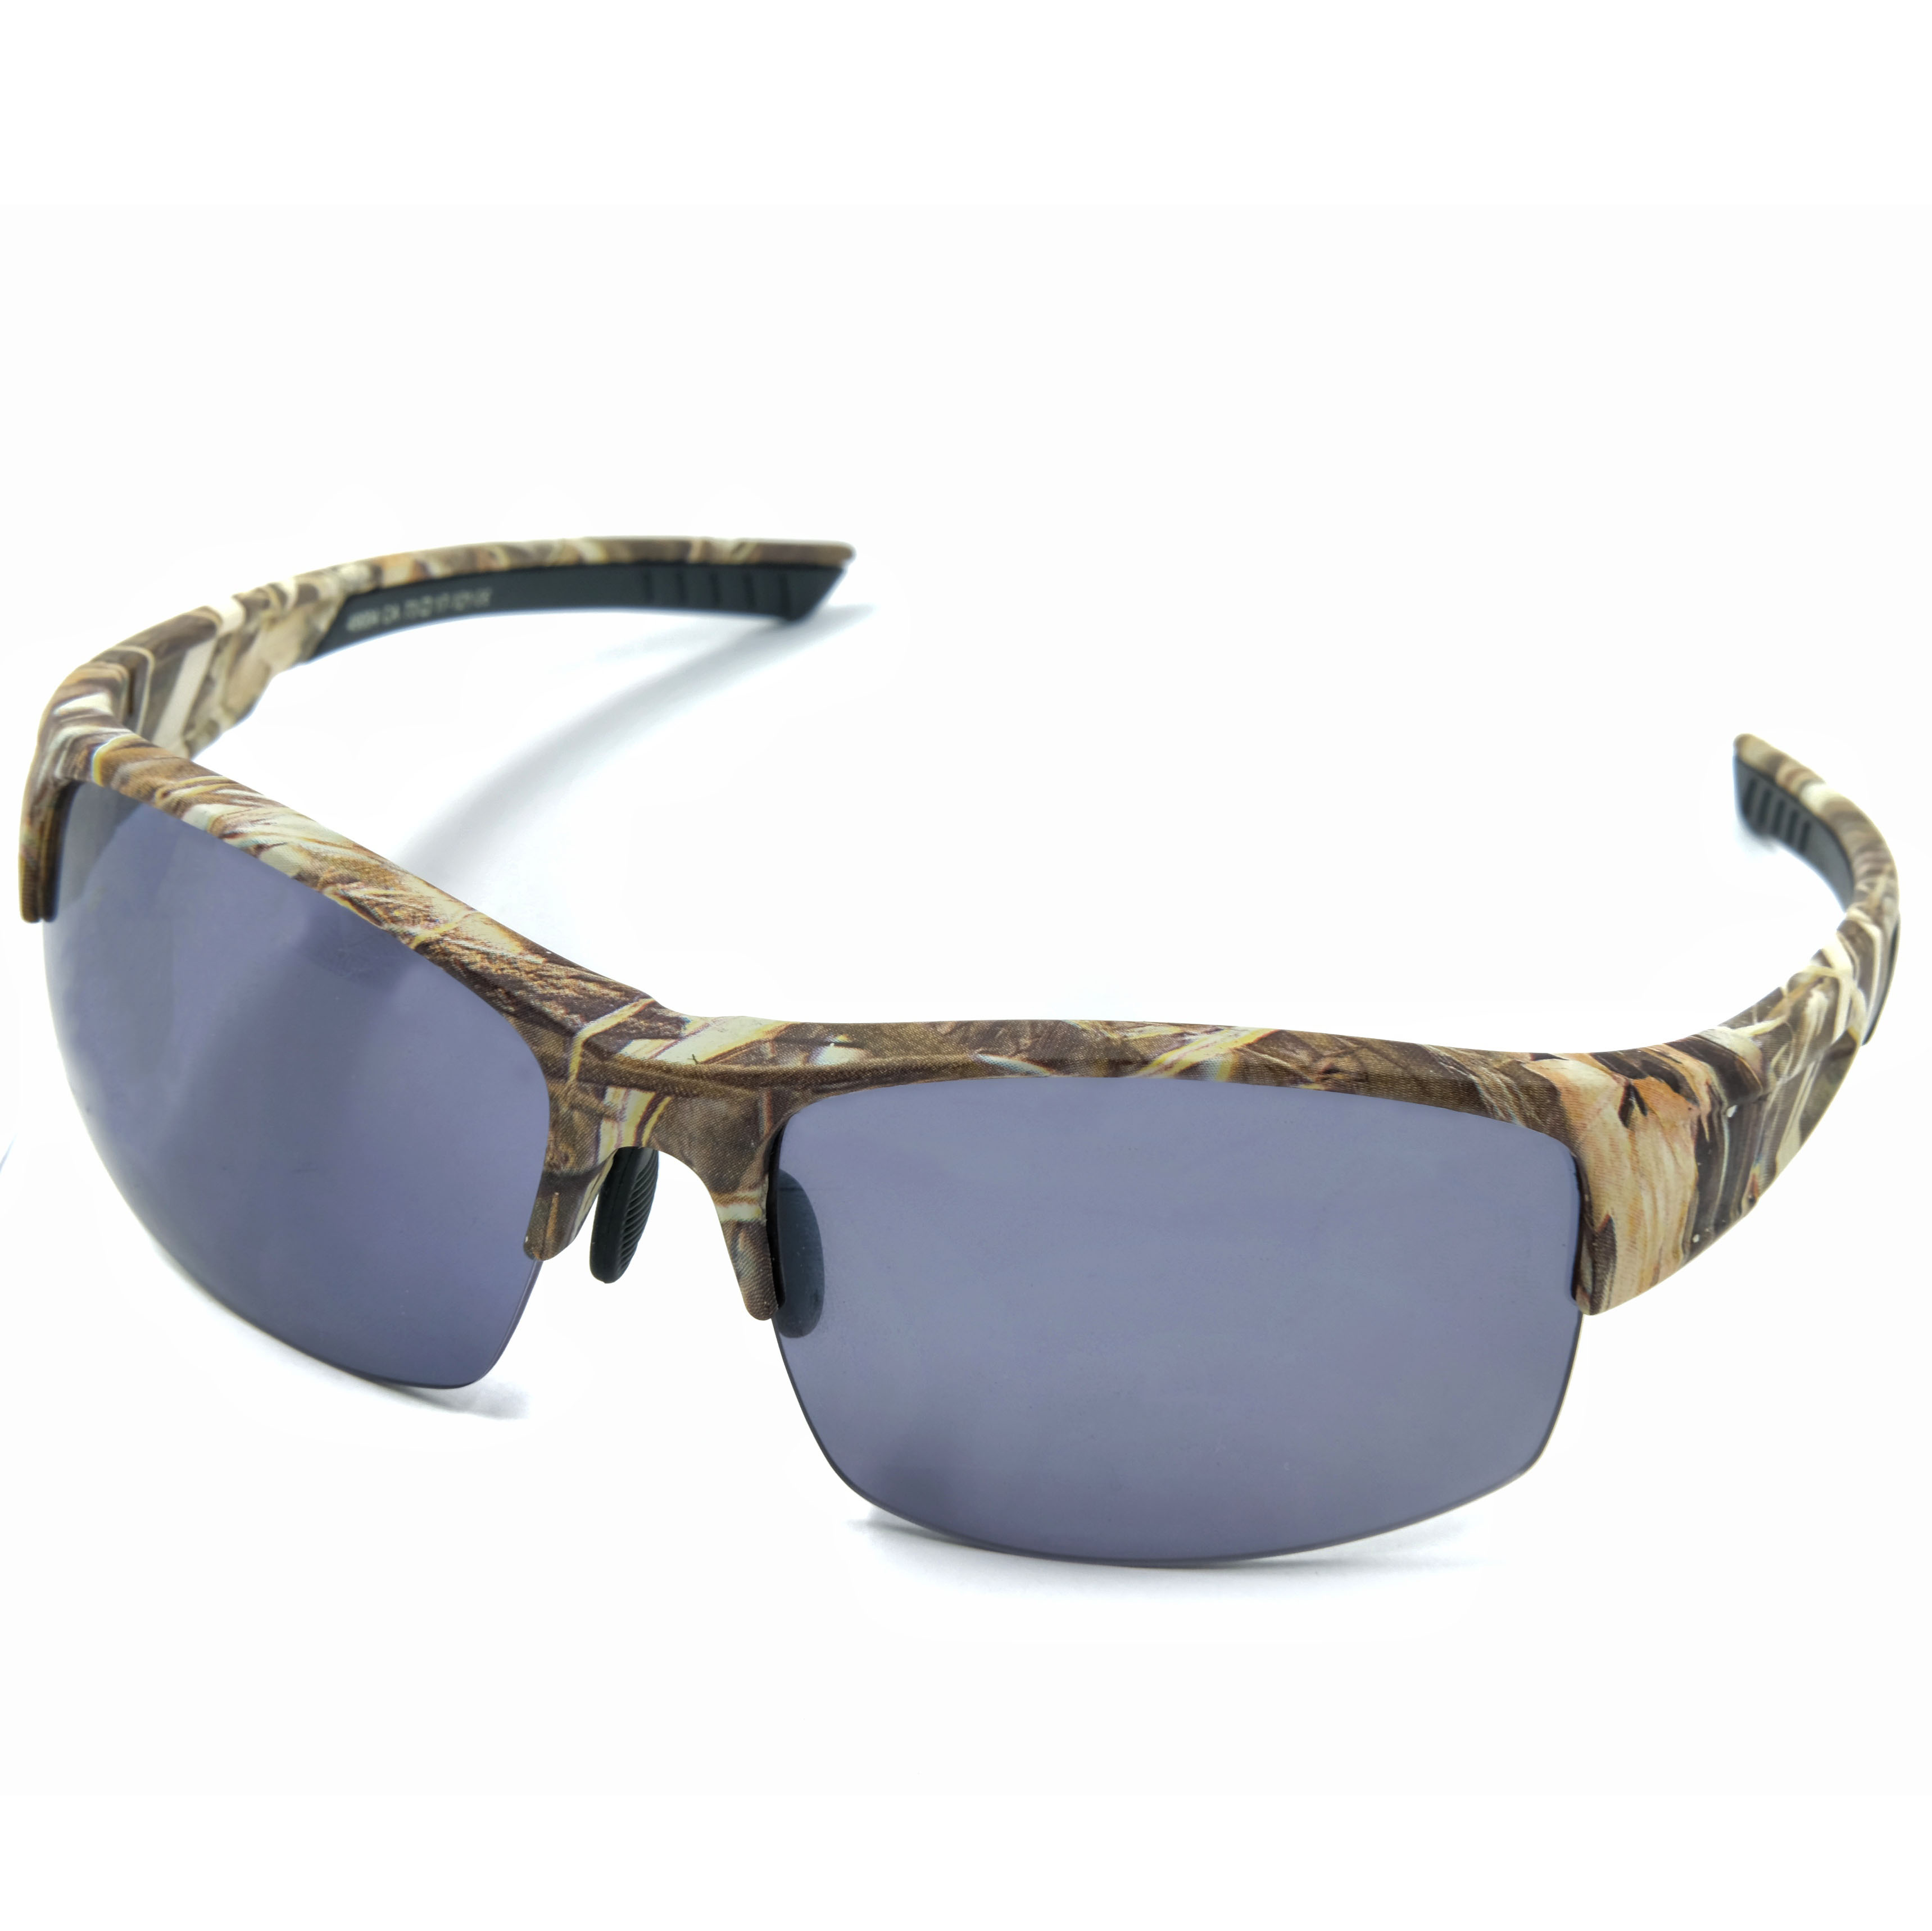 Gafas de sol River Gafas de sol deportivas personalizadas Fabricante de monturas de gafas deportivas personalizadas